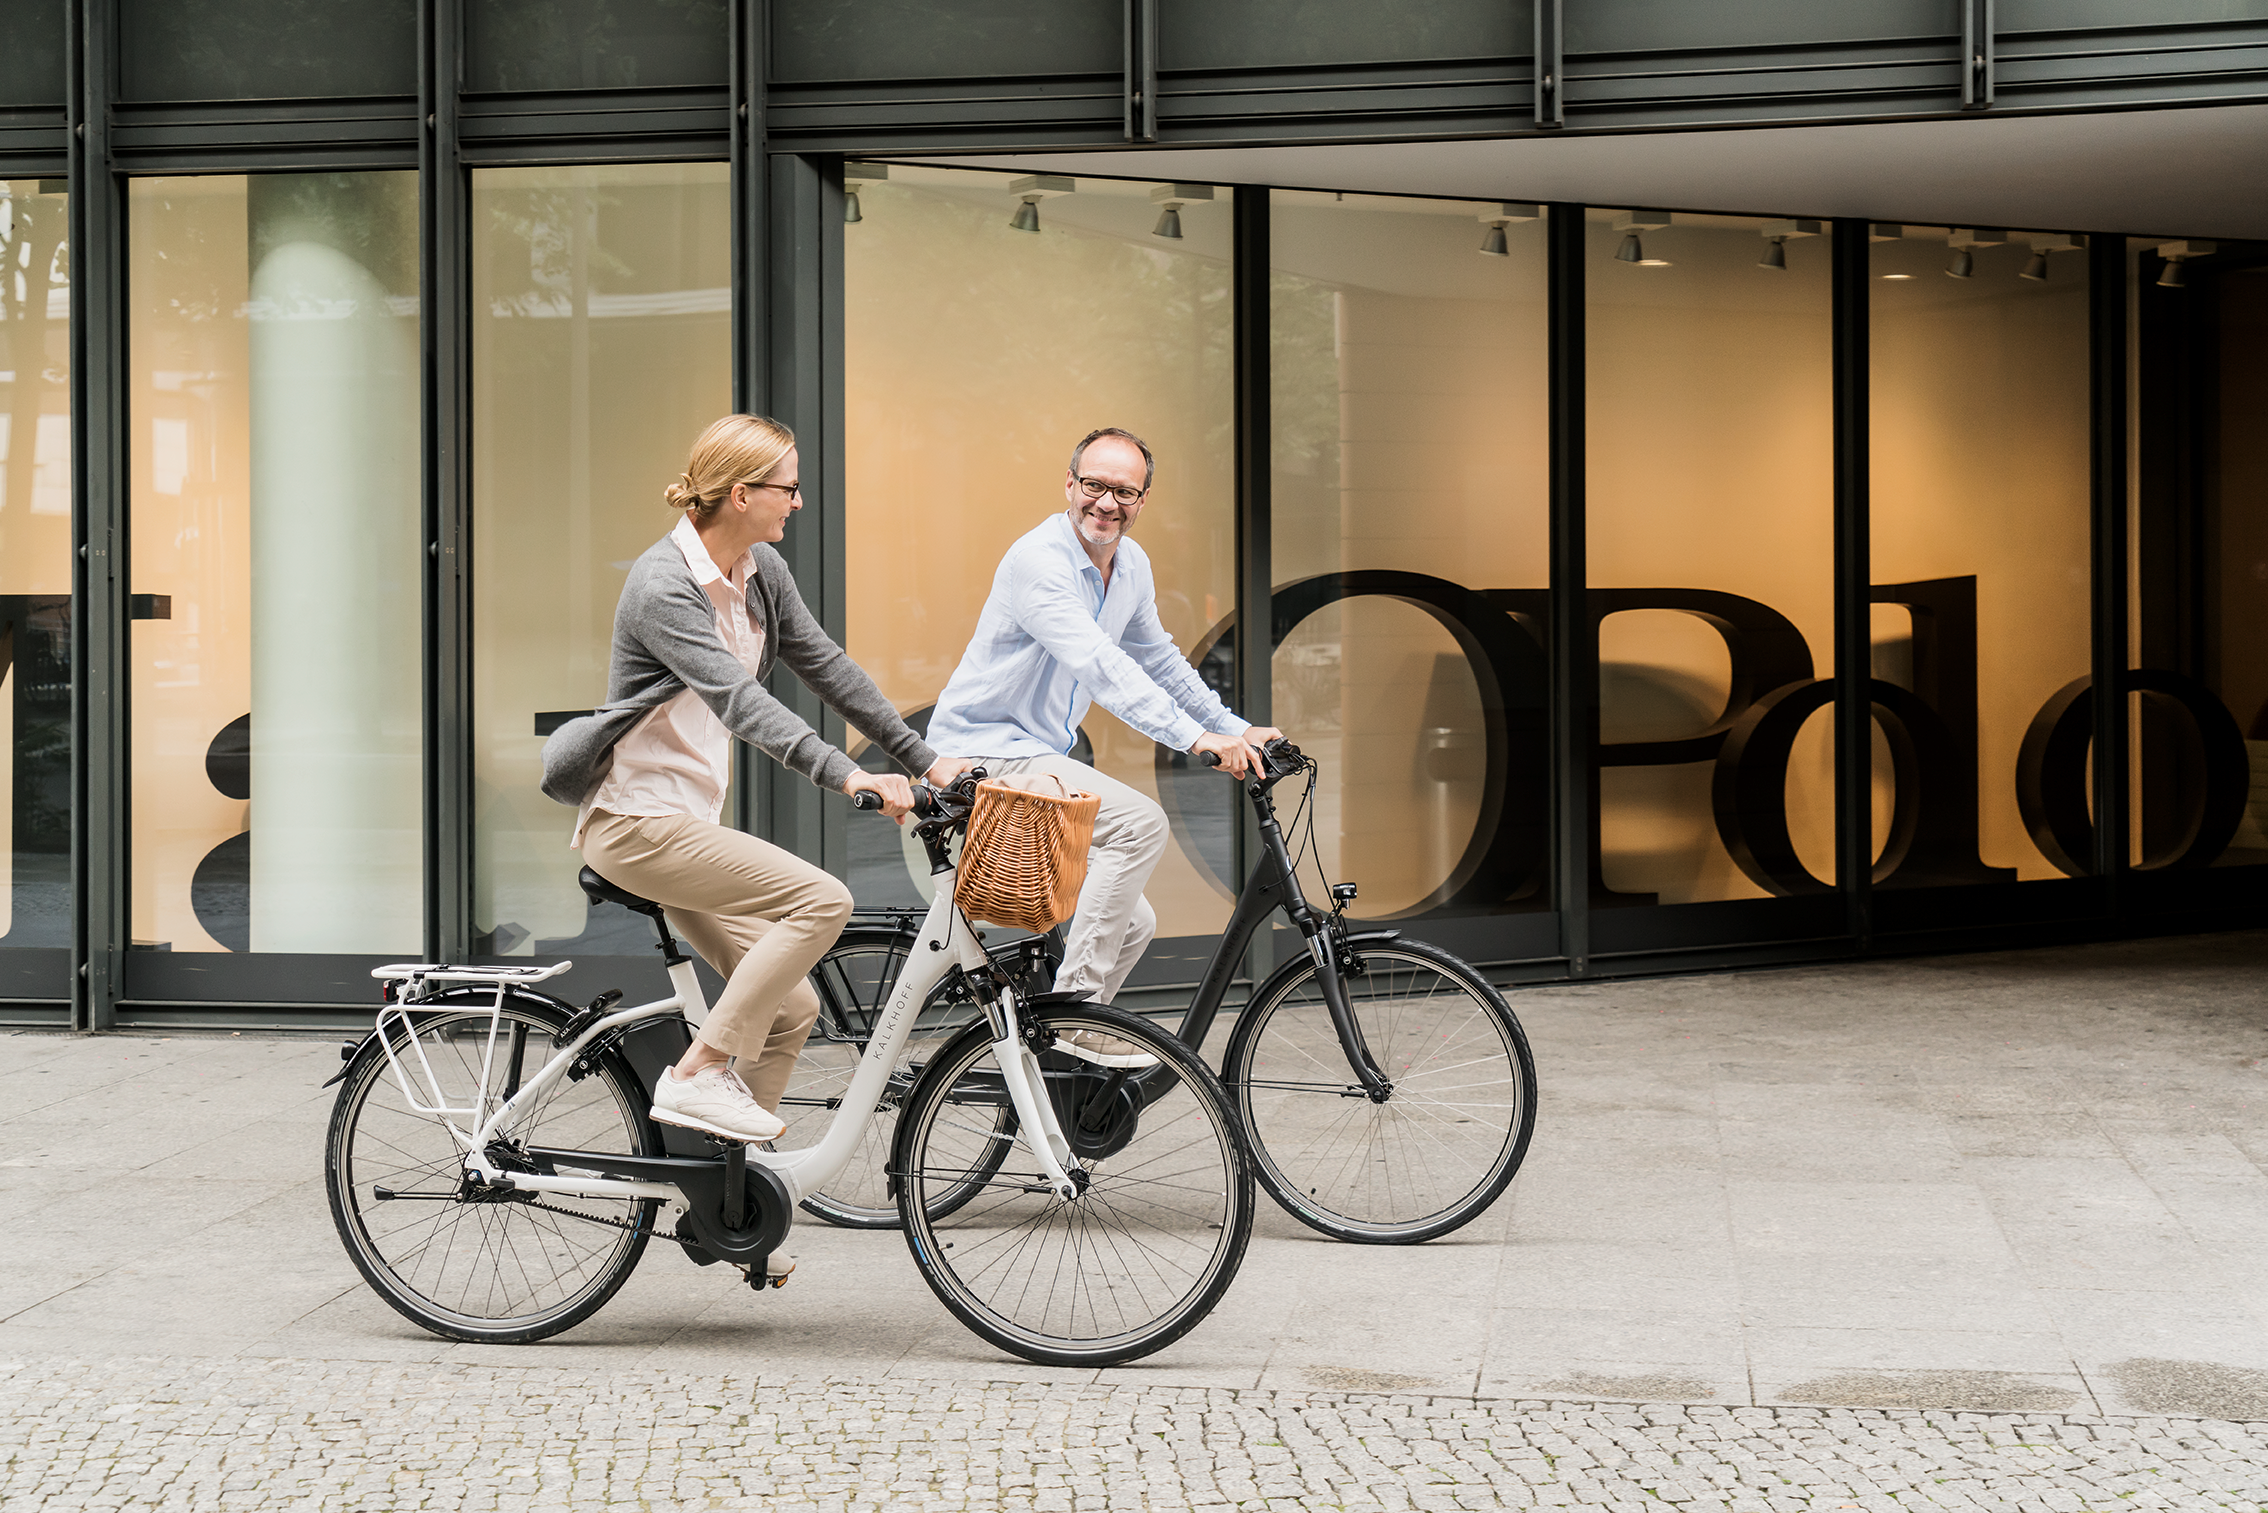 Ein Mann und eine Frau fahren auf City E-Bikes von Kalkhoff durch die Straße